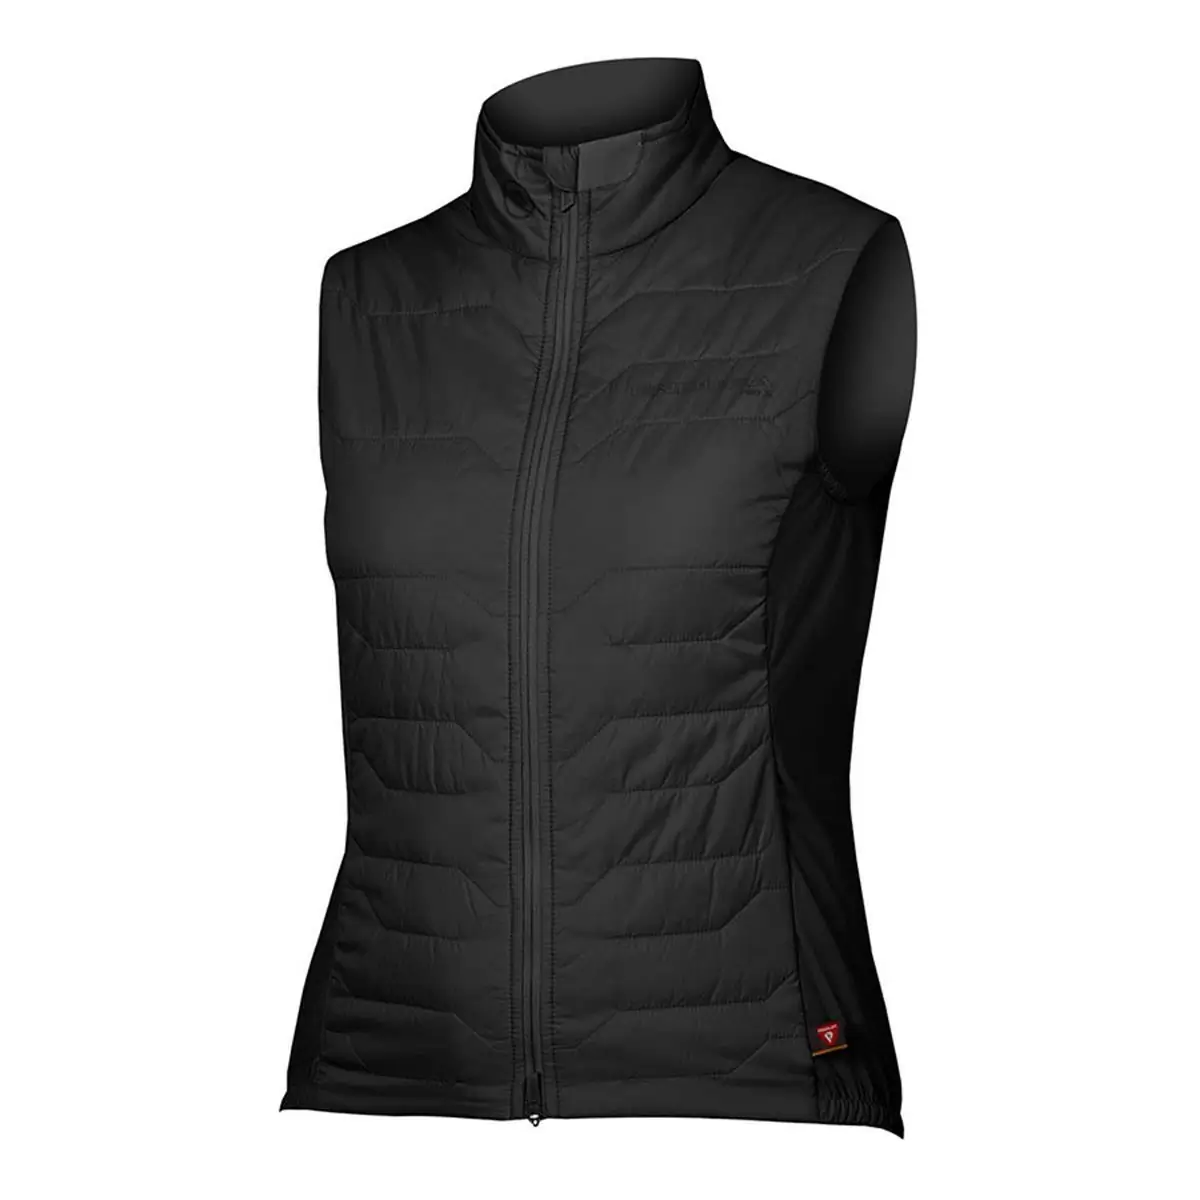 Pro SL PrimaLoft Rain/Windproof Vest Women's Vest Black size L - image